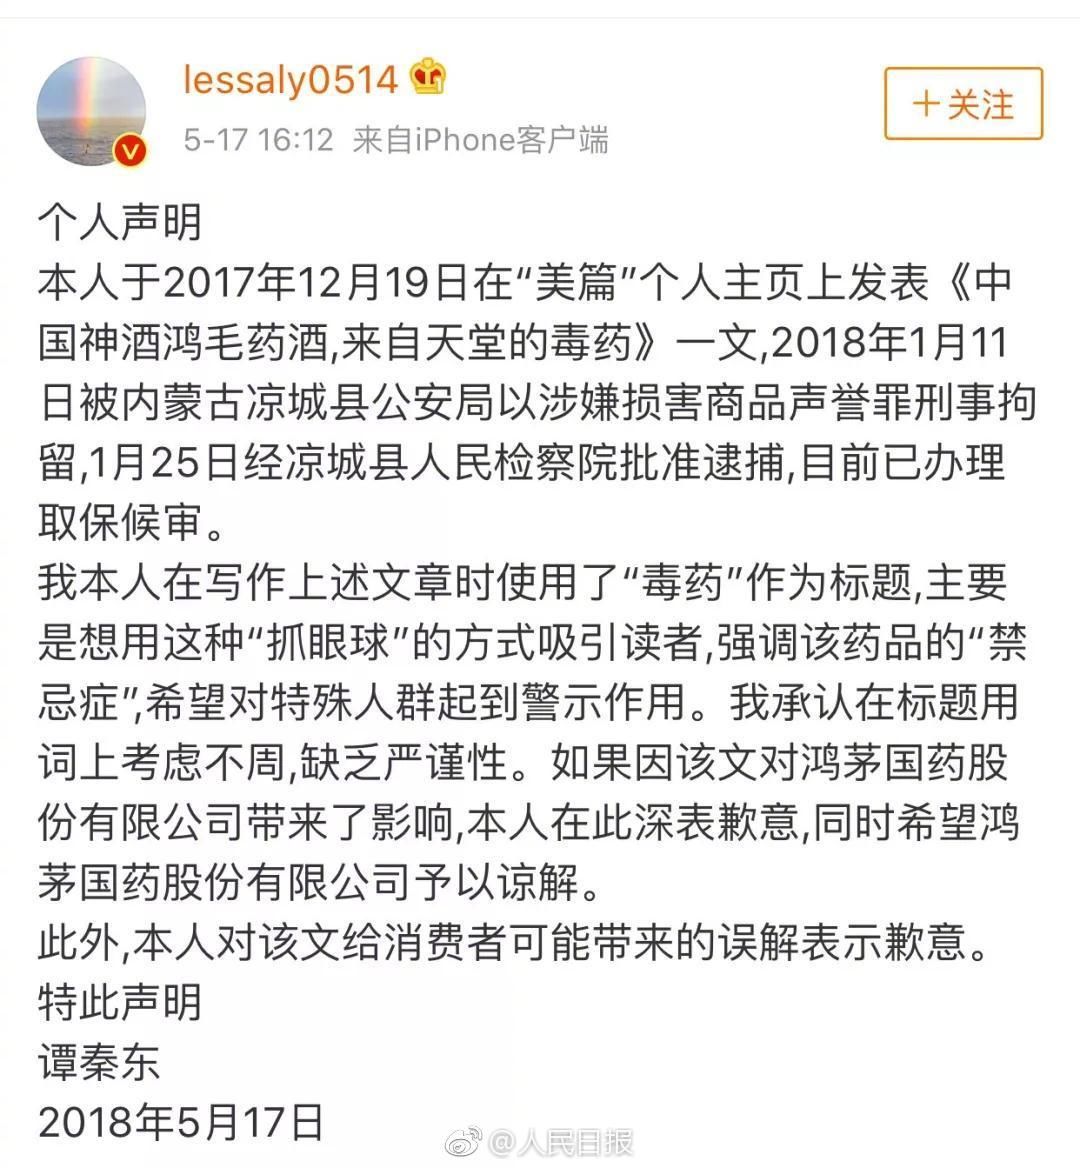 鸿茅国药发声明:接受谭秦东本人致歉声明,撤回